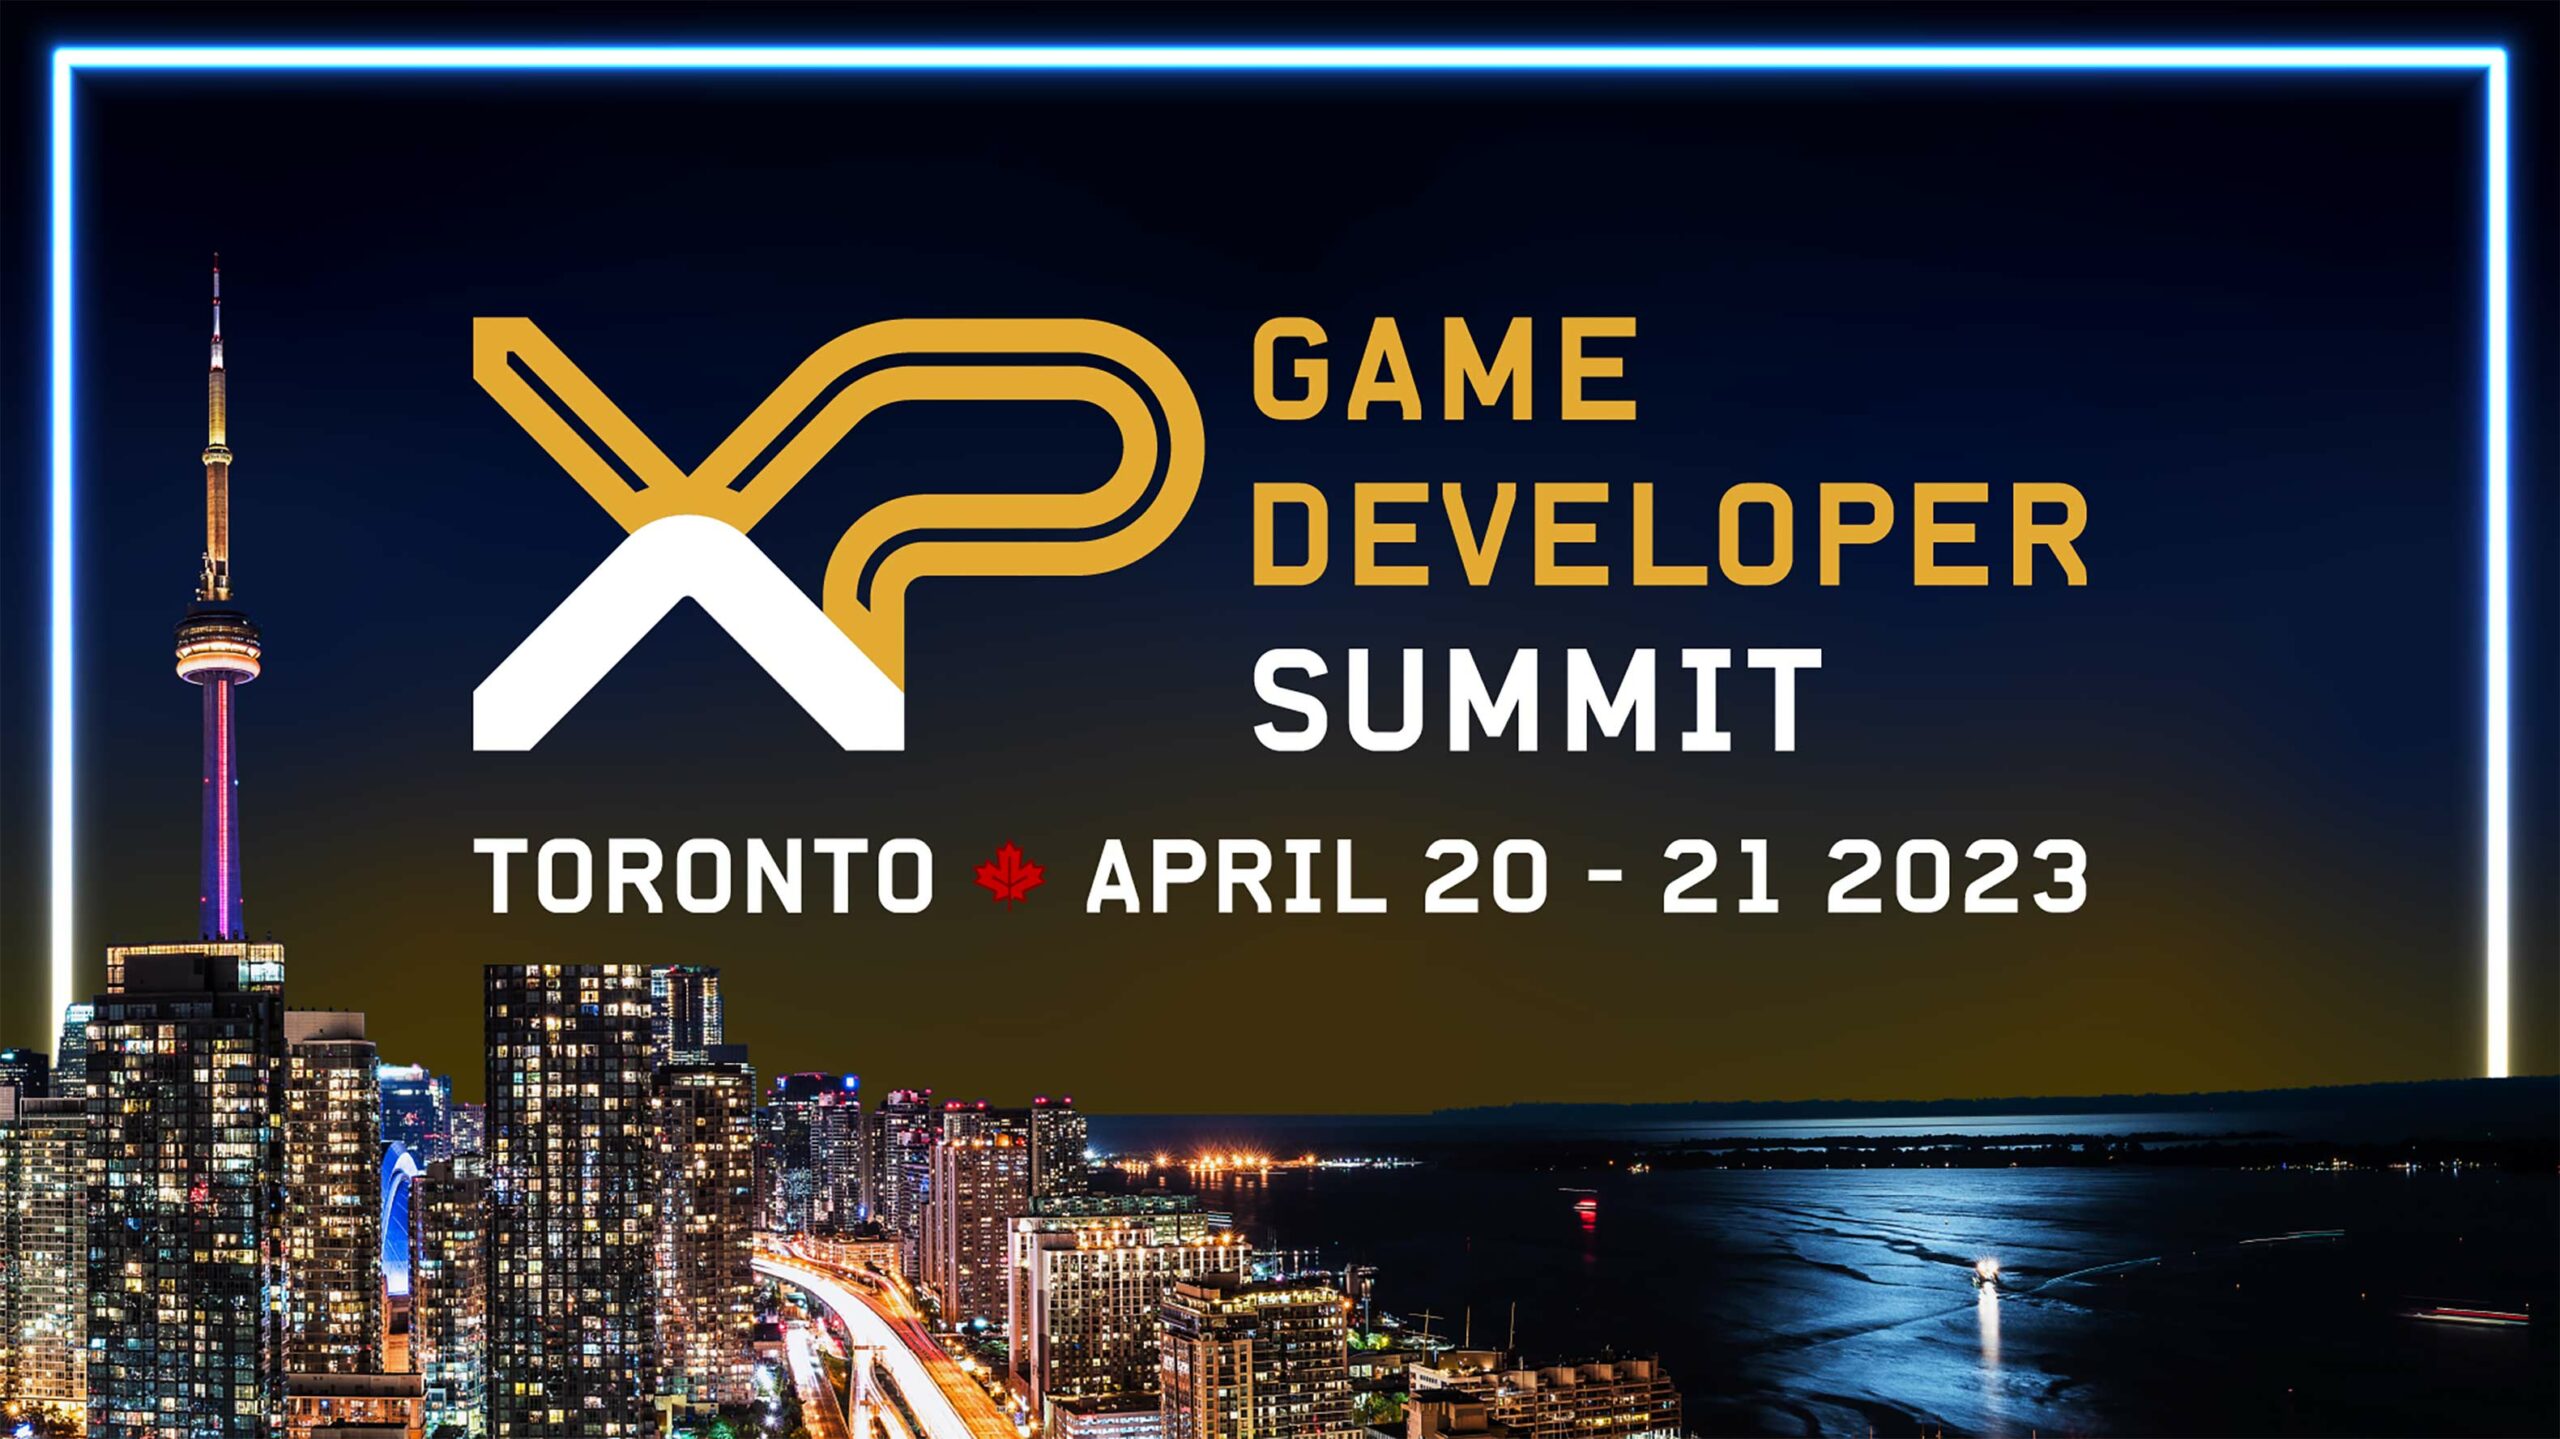 XP Game Developer Summit 2023